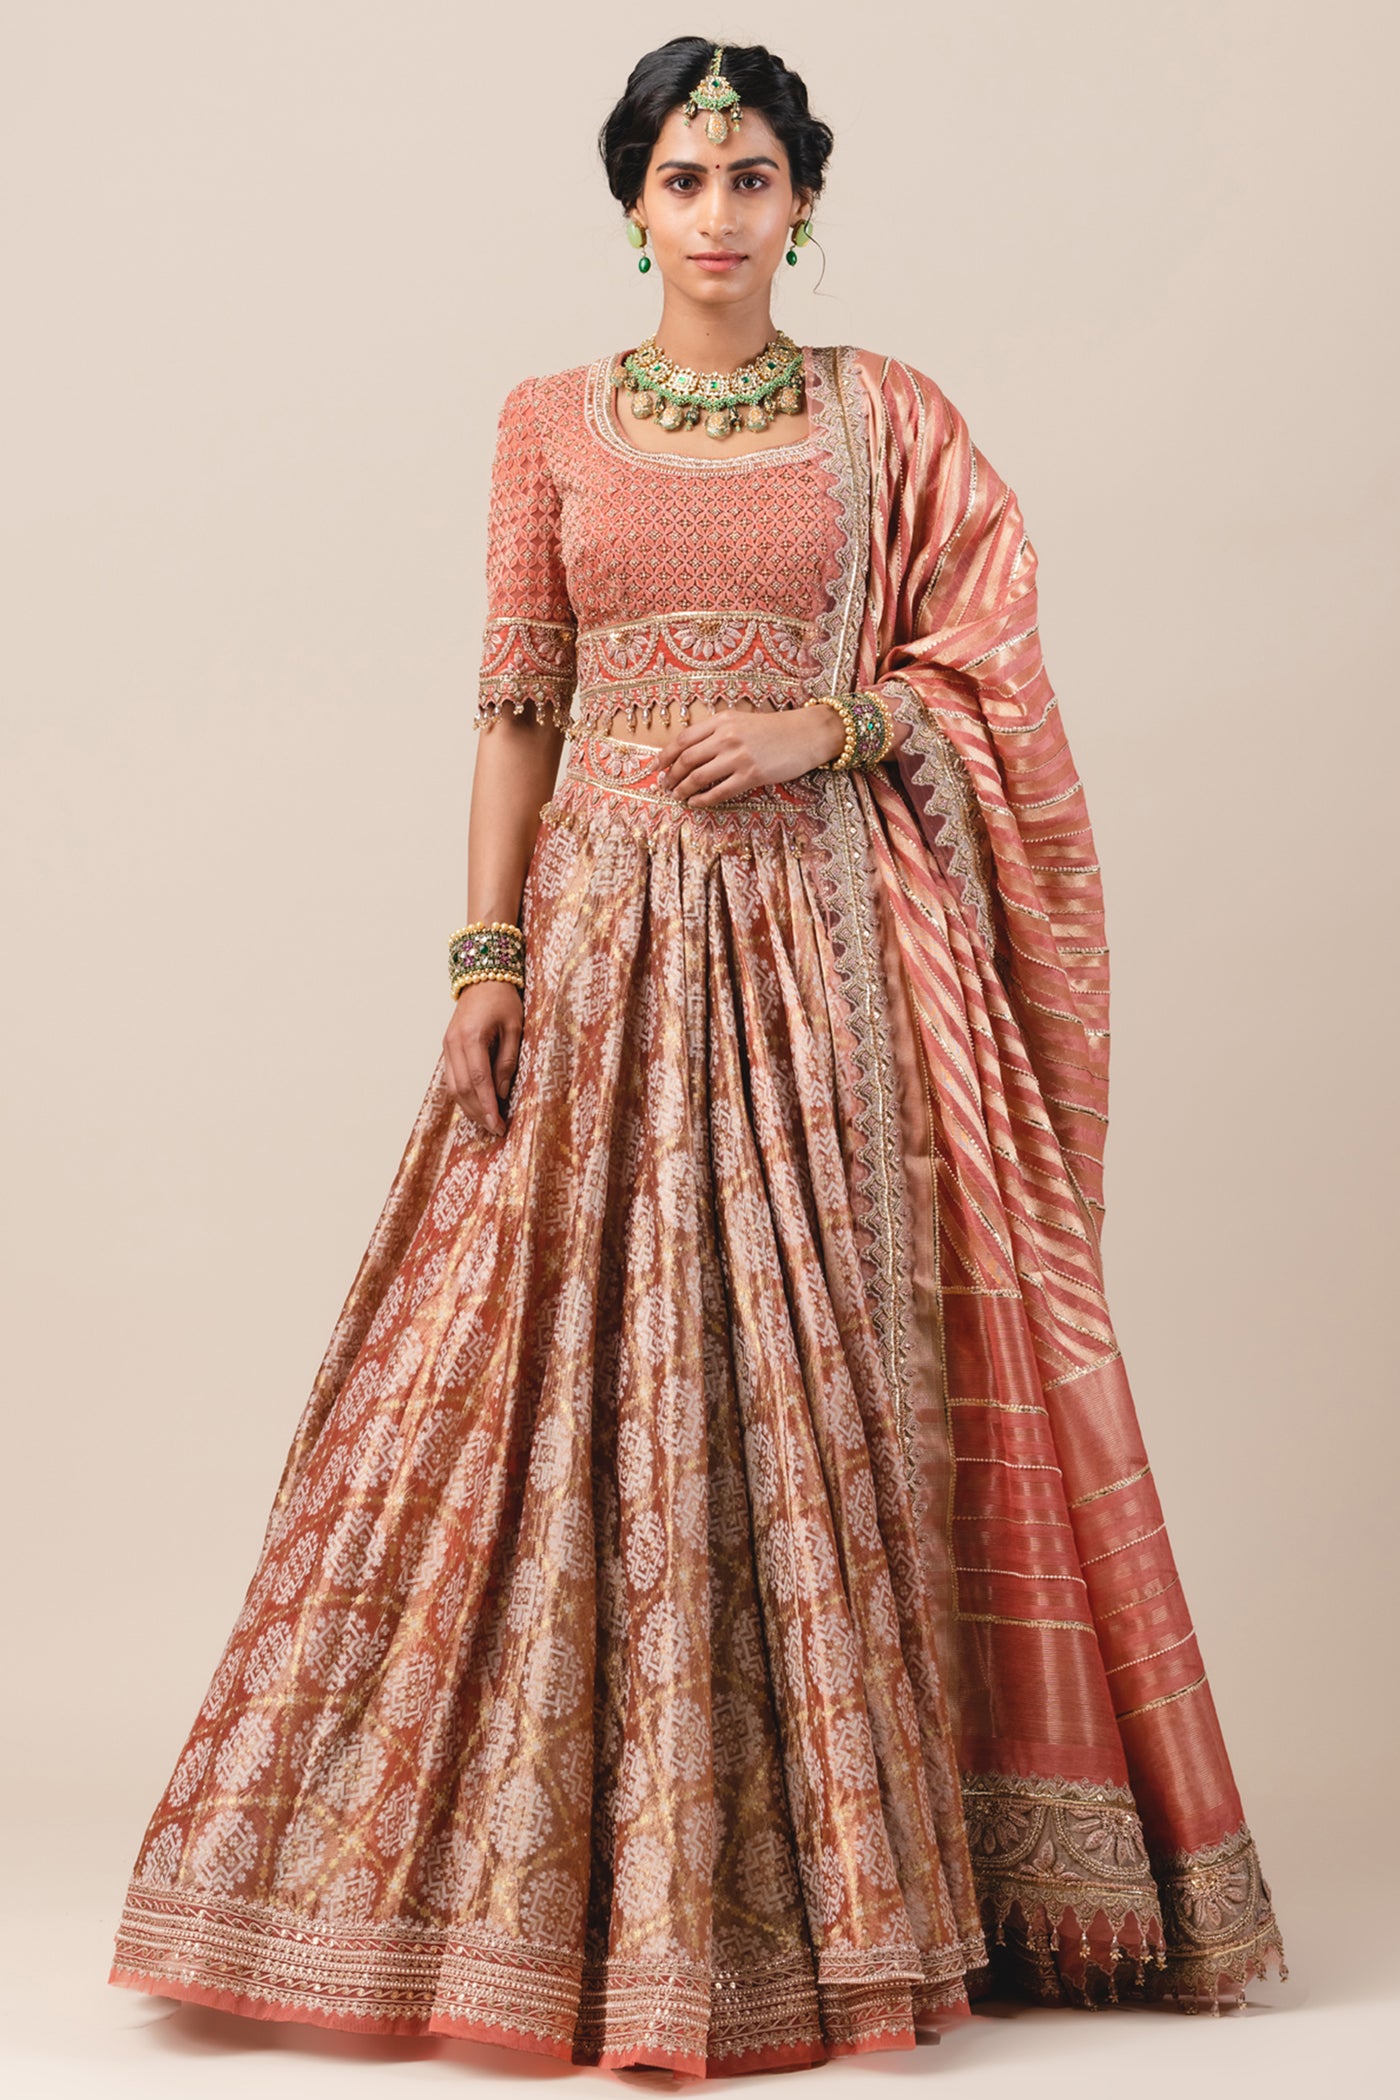 tarun tahiliani Kalidar Drape Lehenga Of Cutwork Tissue Fabric red online shopping melange singapore indian designer bridal wear